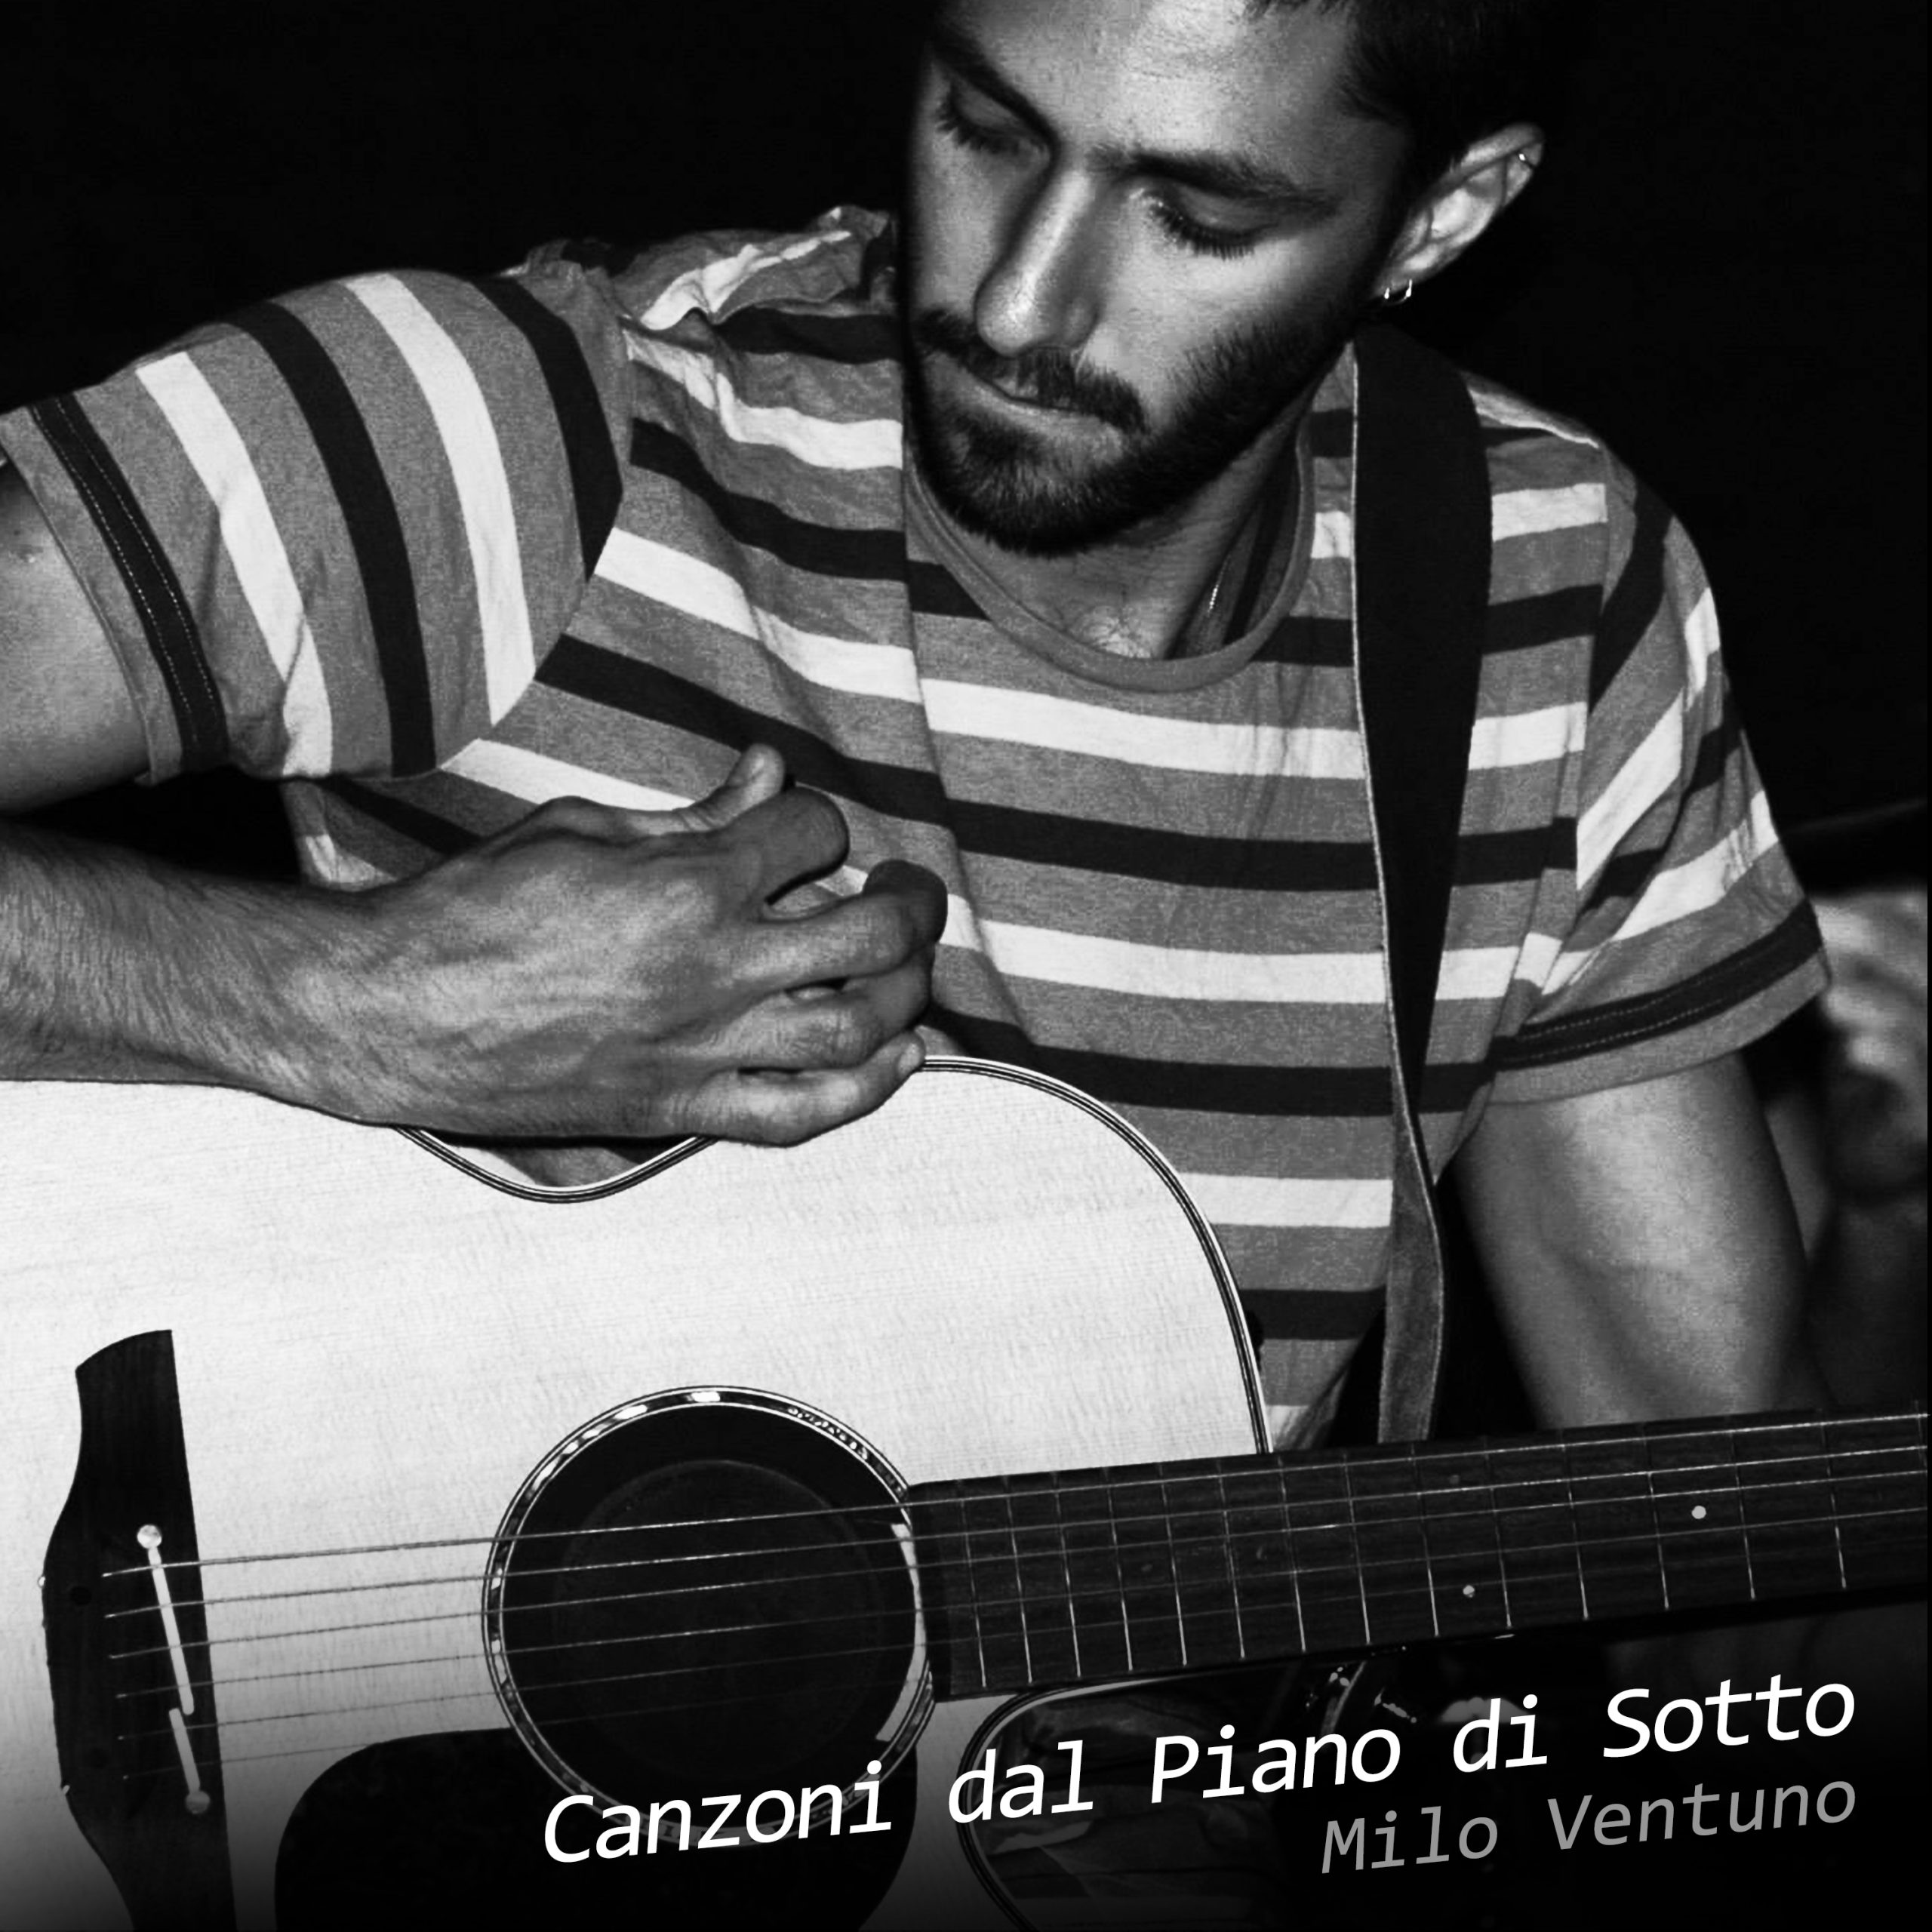 Milo-Ventuno-Canzoni-dal-Piano-di-Sotto-COVER-scaled-1.jpg